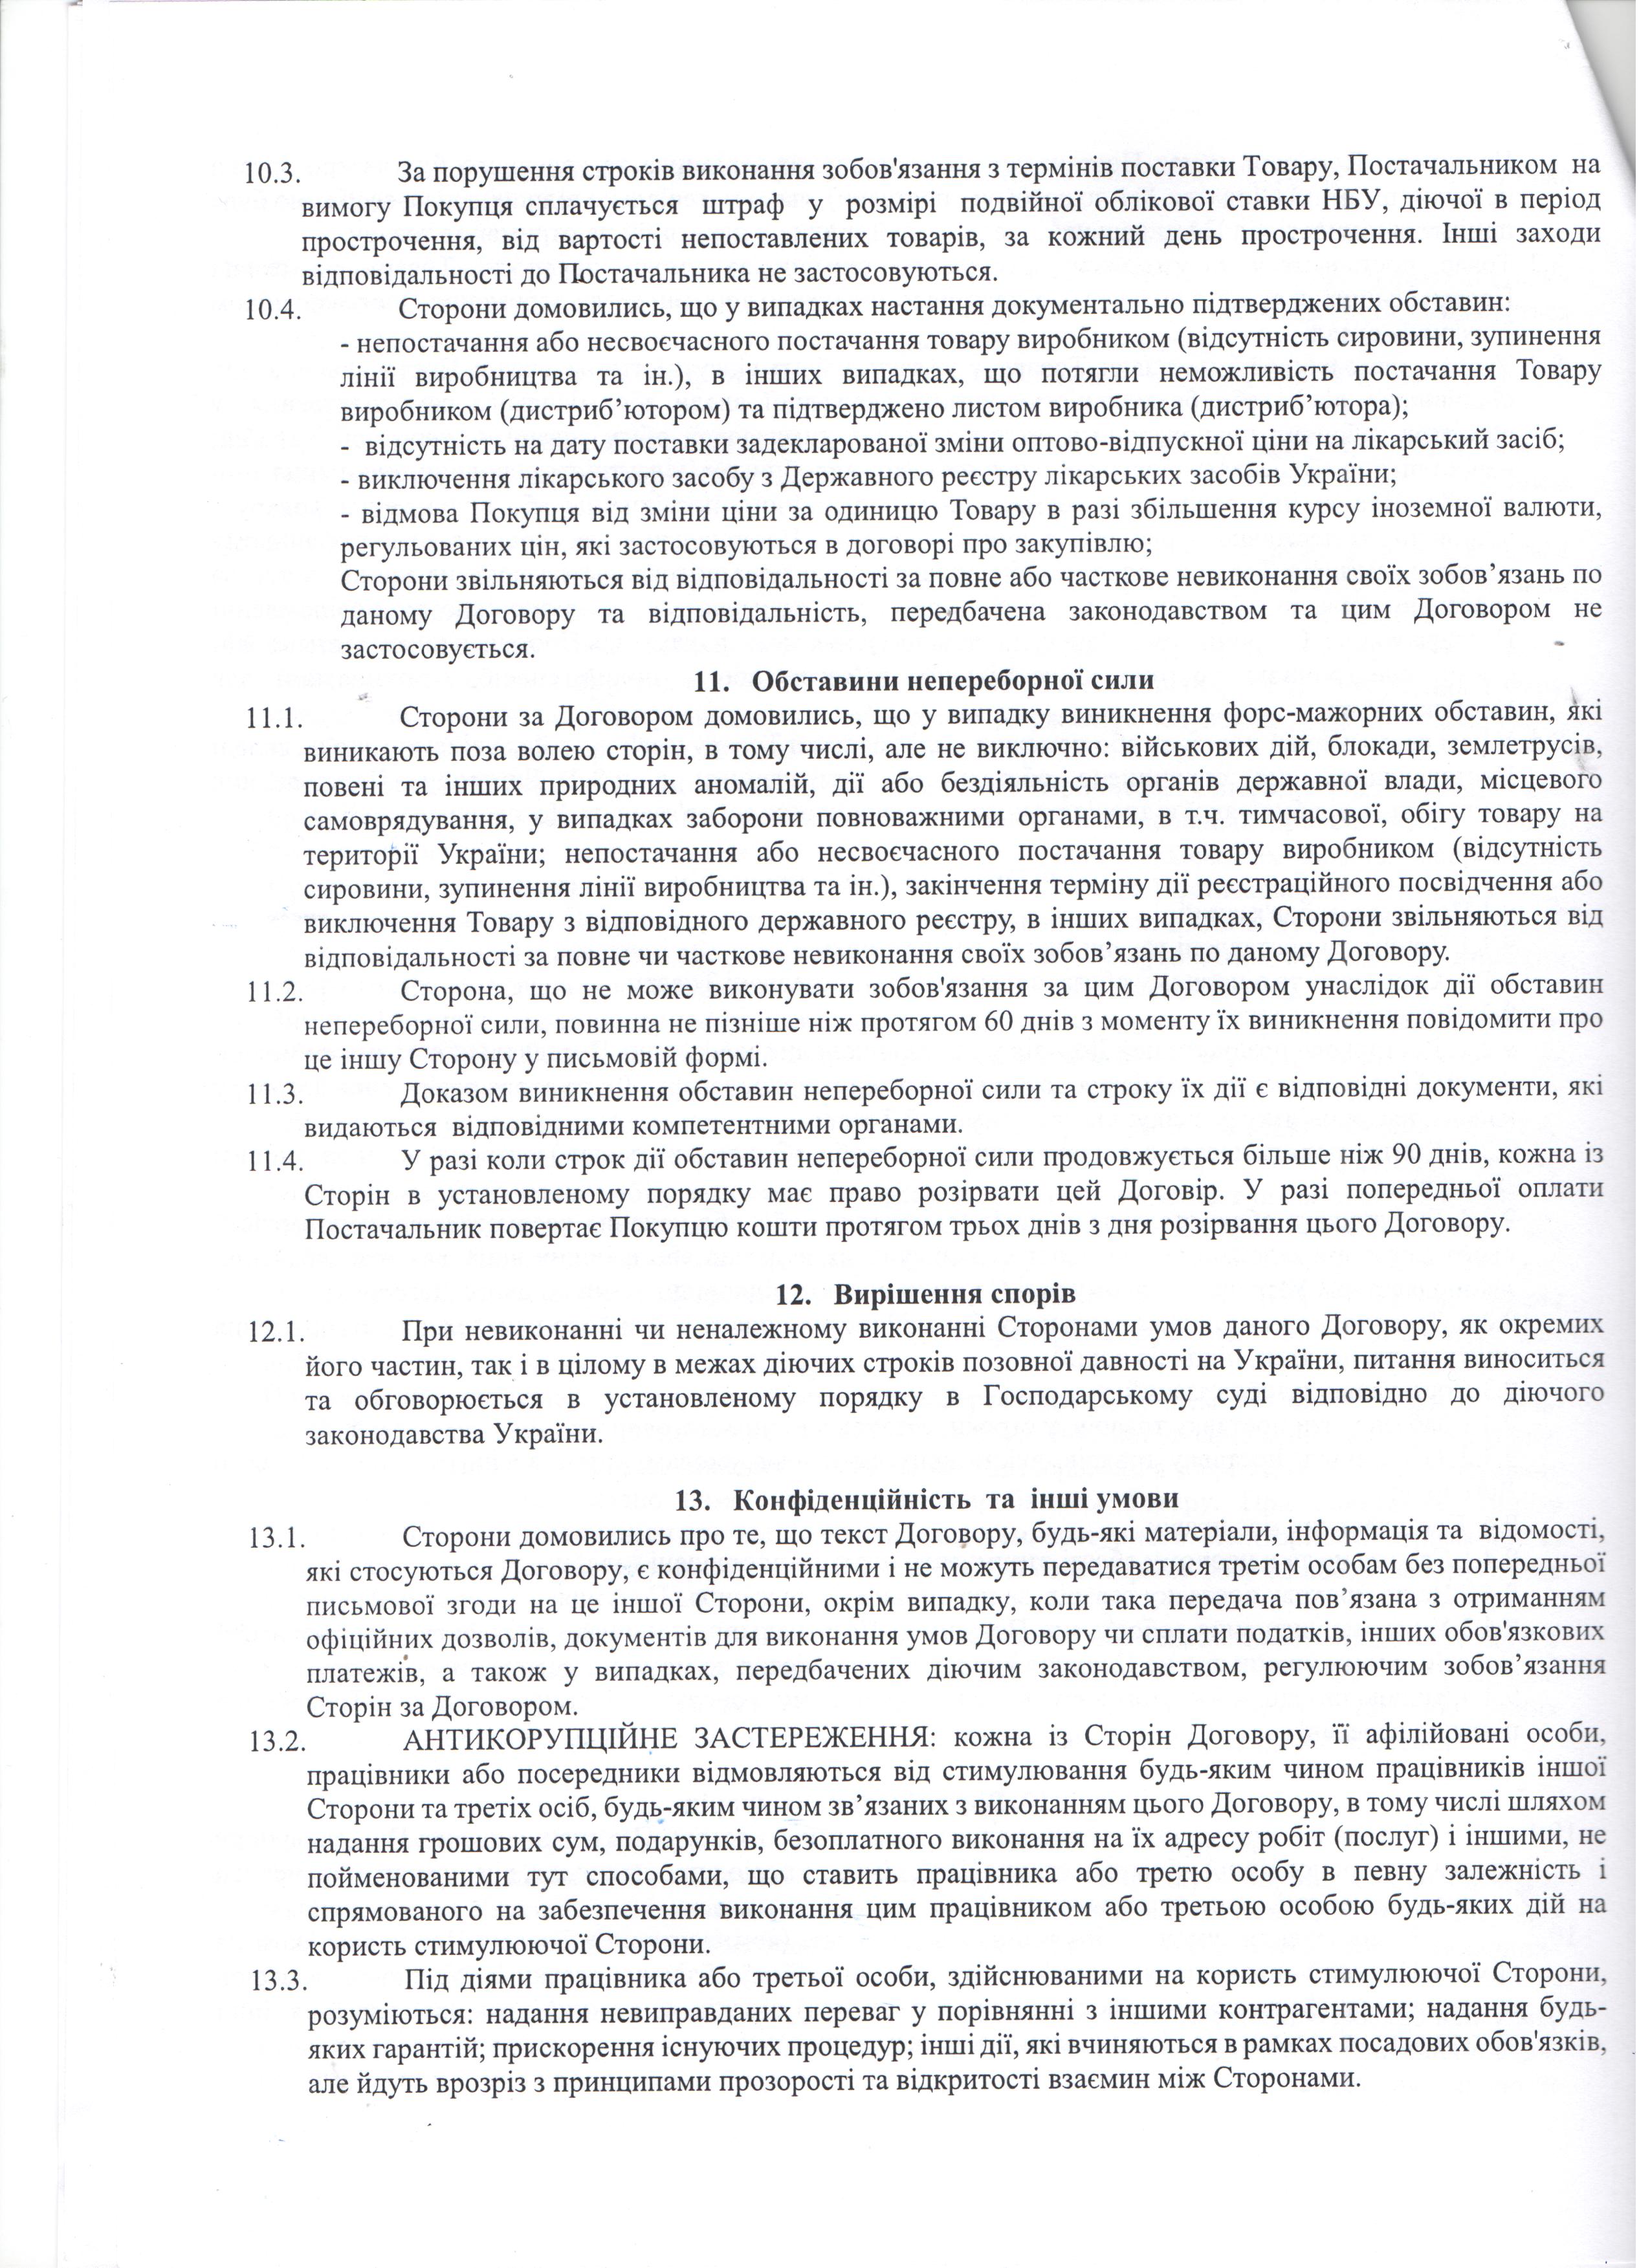 Договір №209 від 10.12.2020 р.